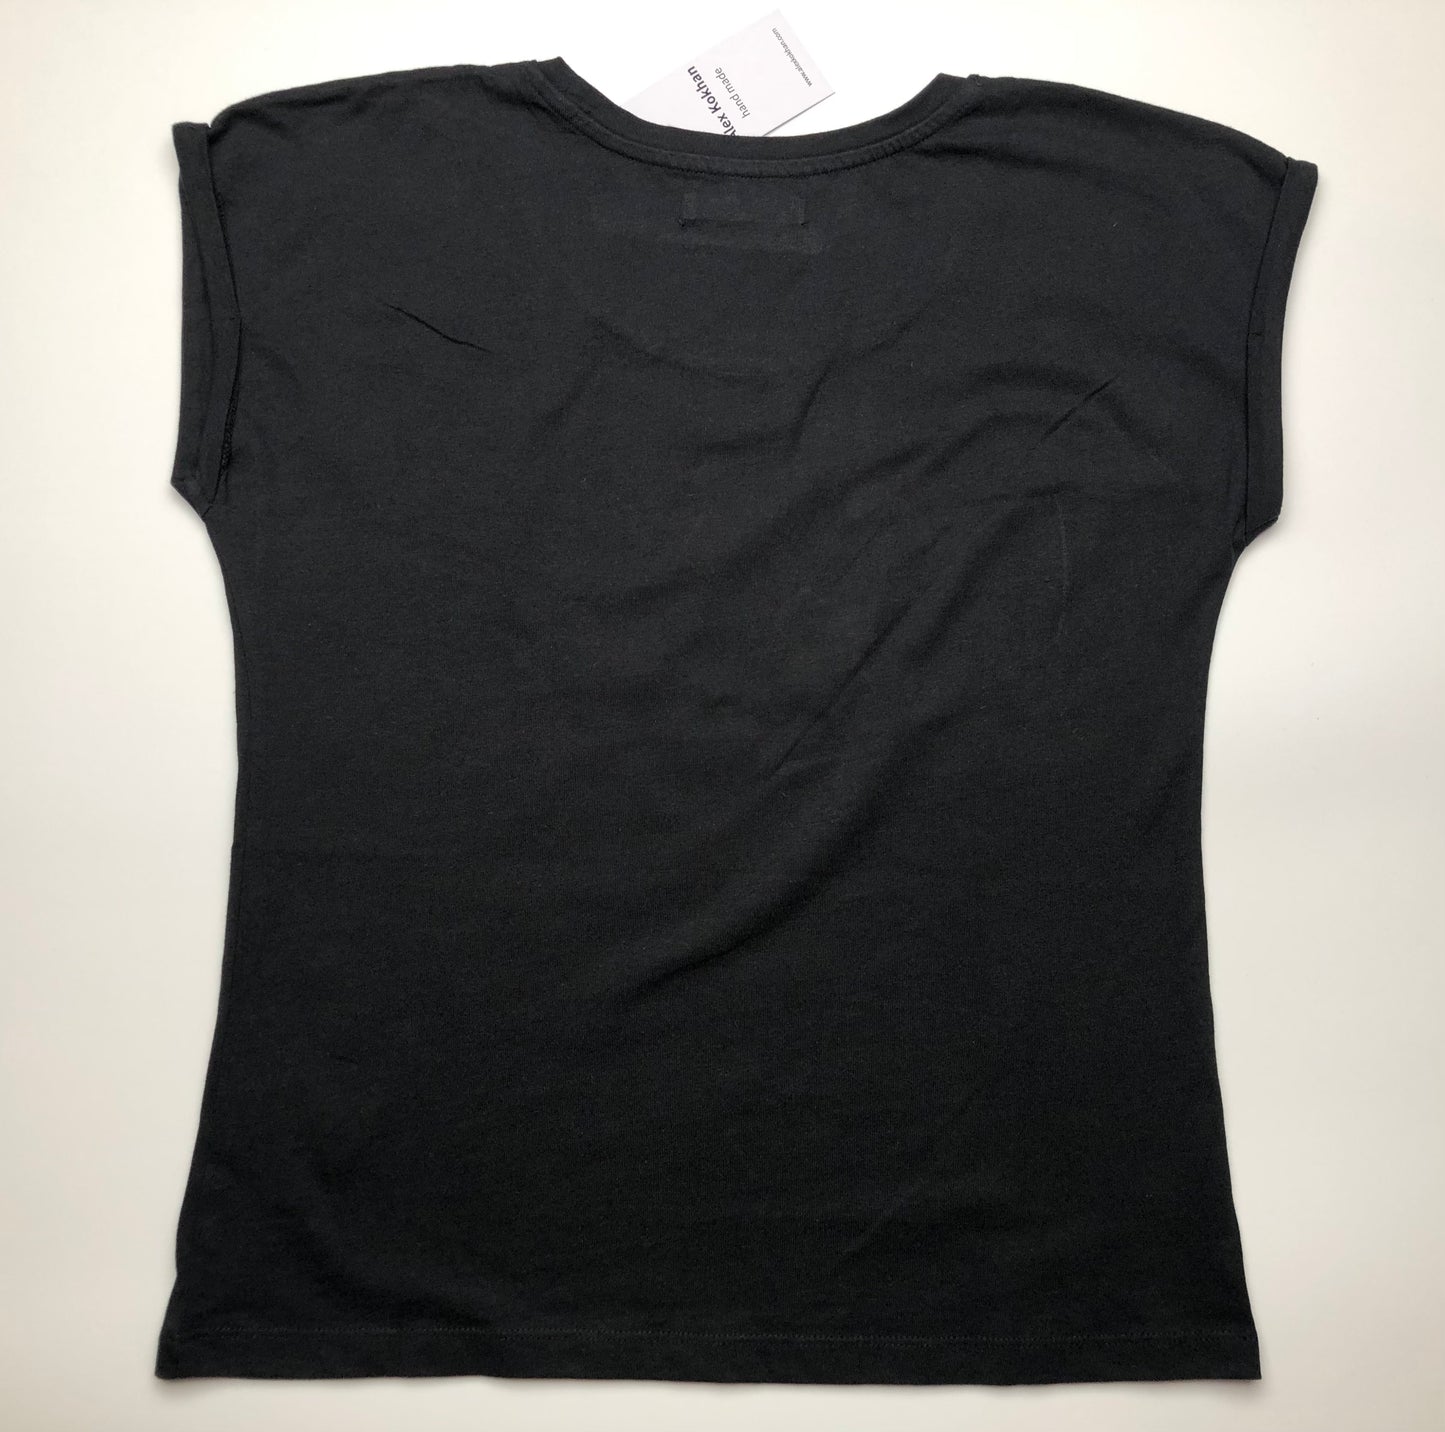 Women's black short sleeve t-shirt skeleton in winged dress back